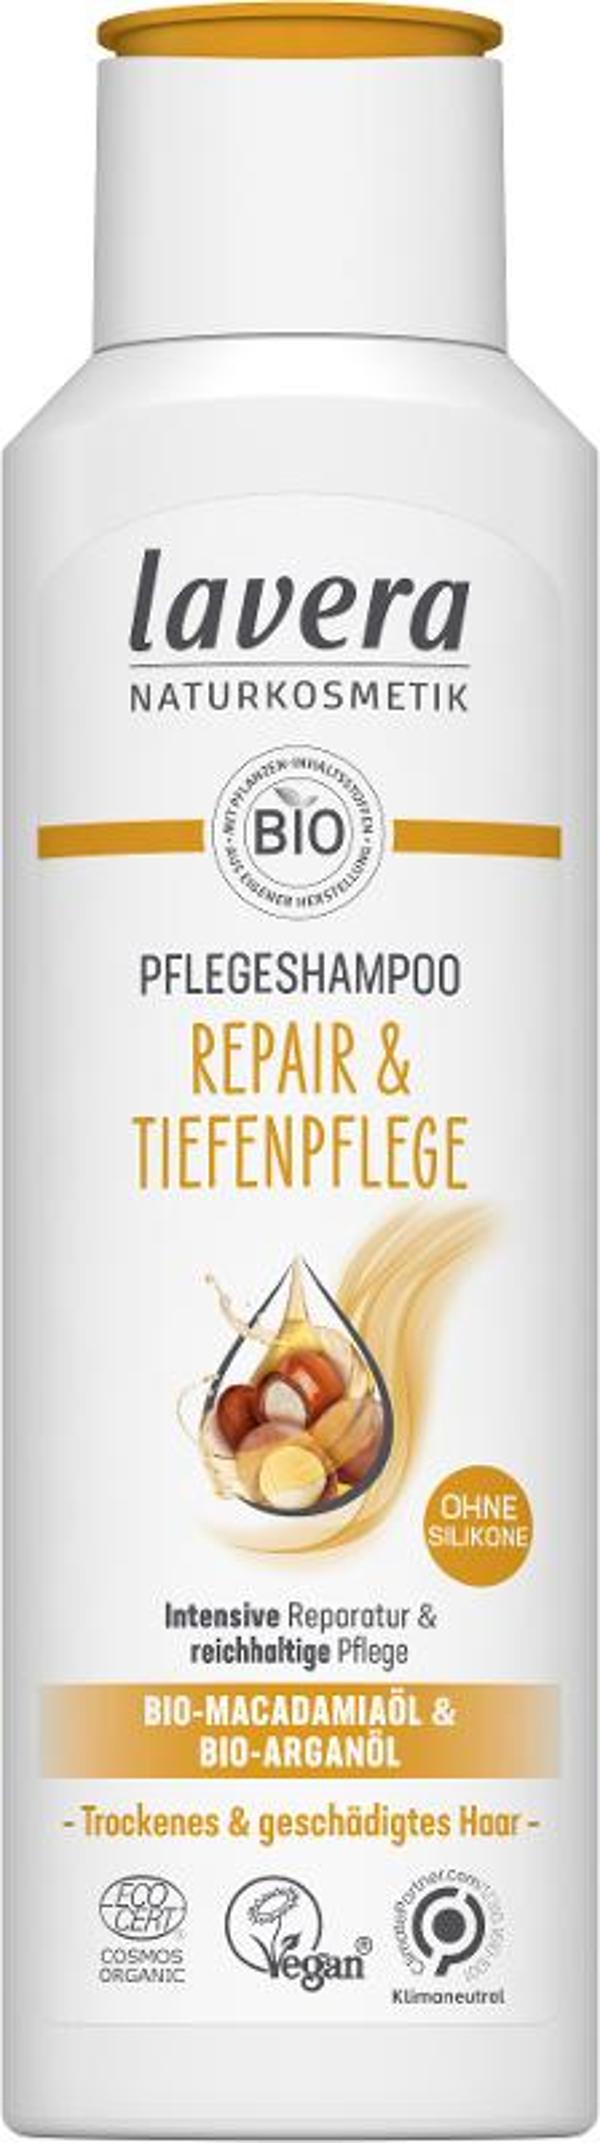 Produktfoto zu Shampoo Repair & TIefenpflege